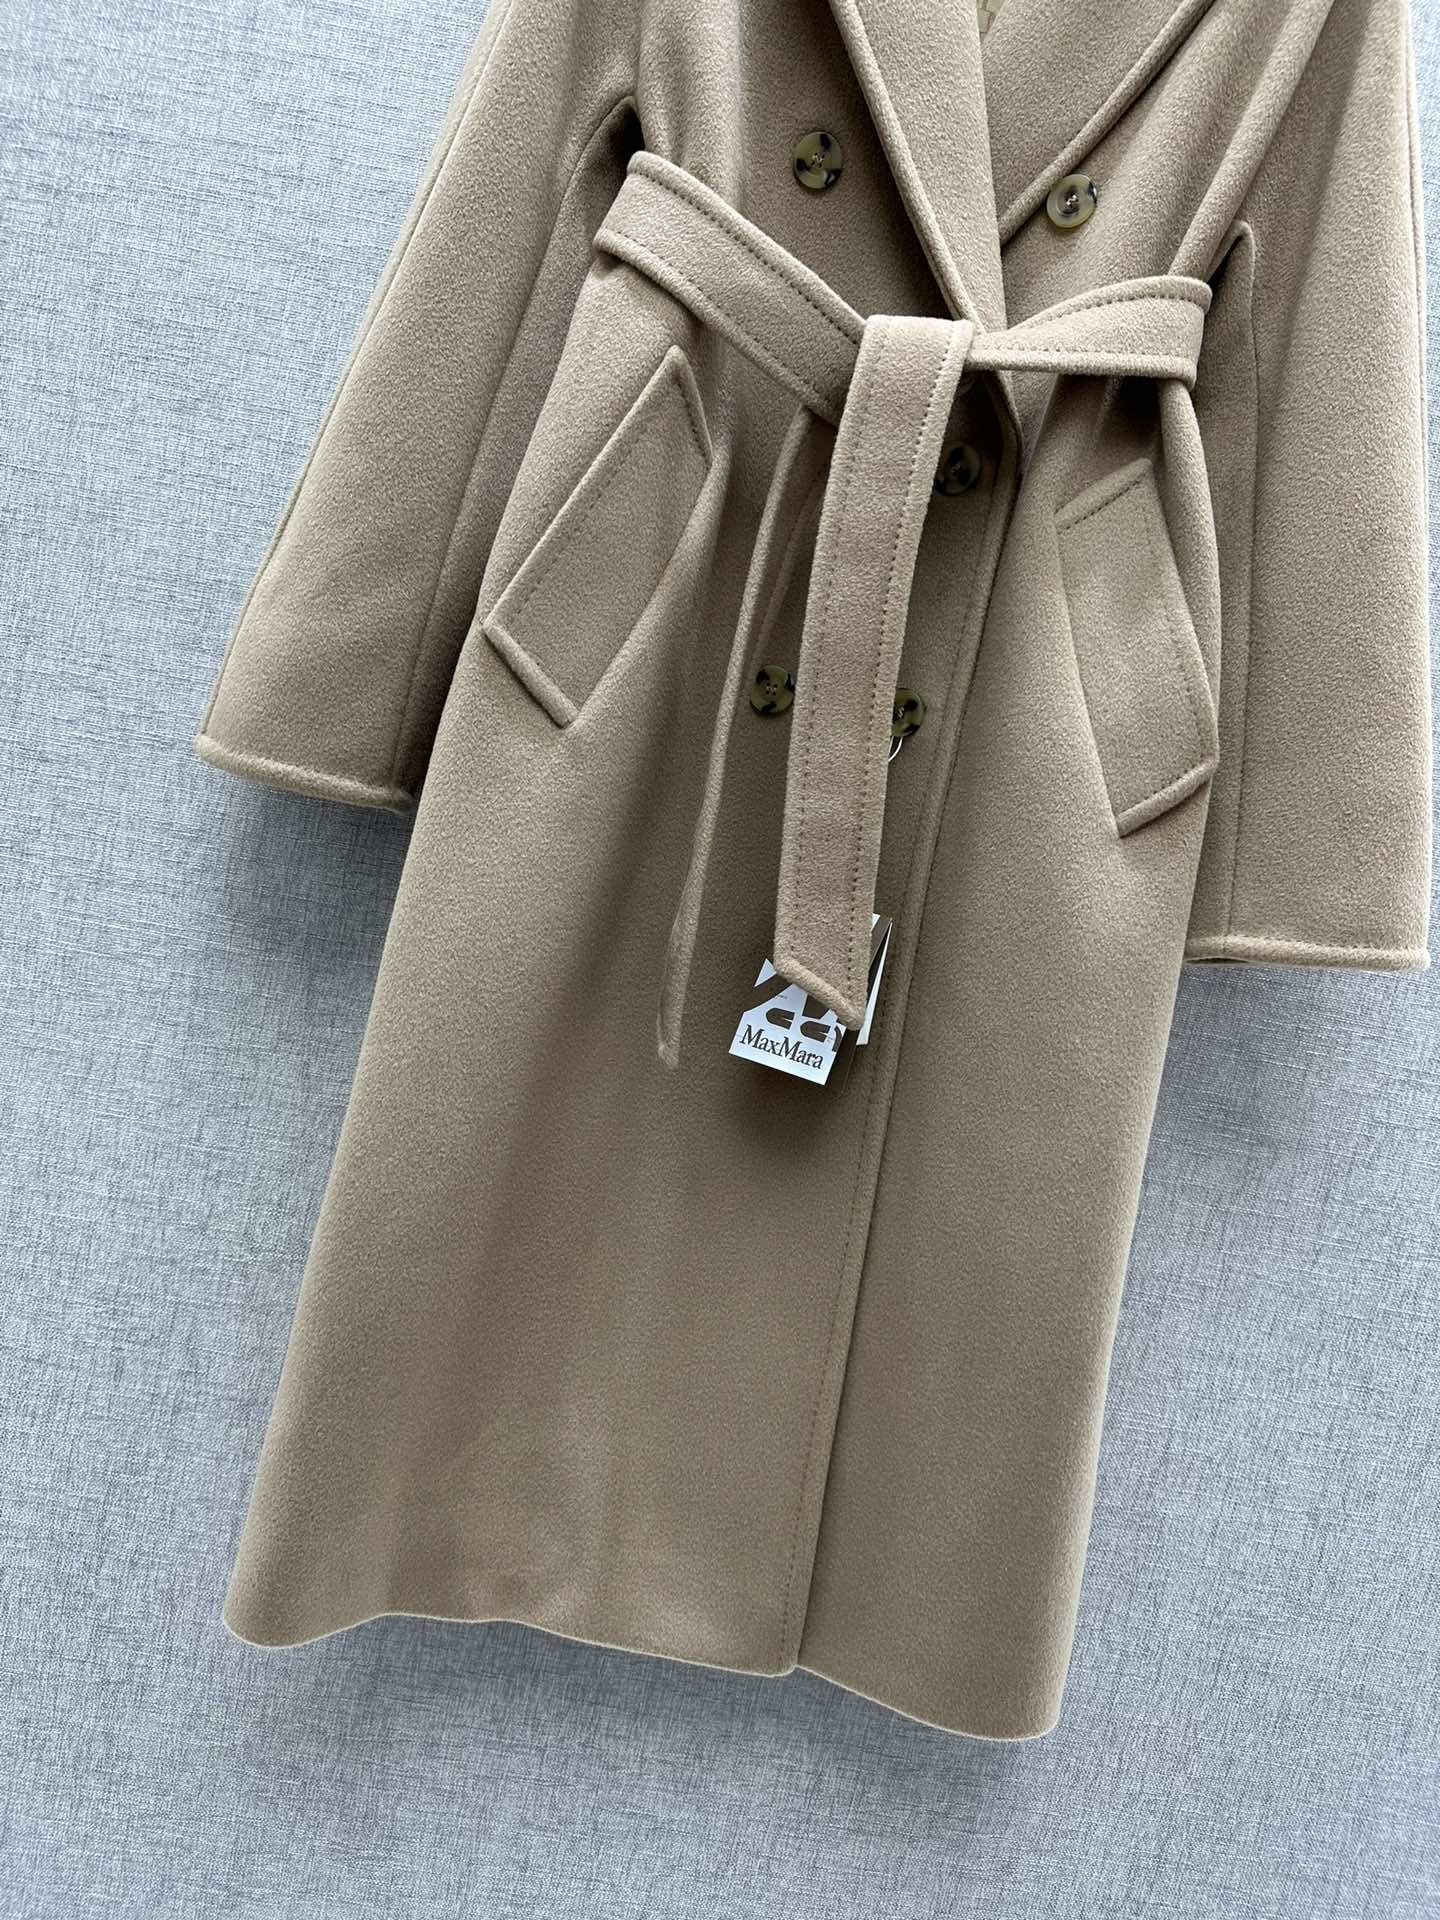 Кашемировое пальто женское фото 4